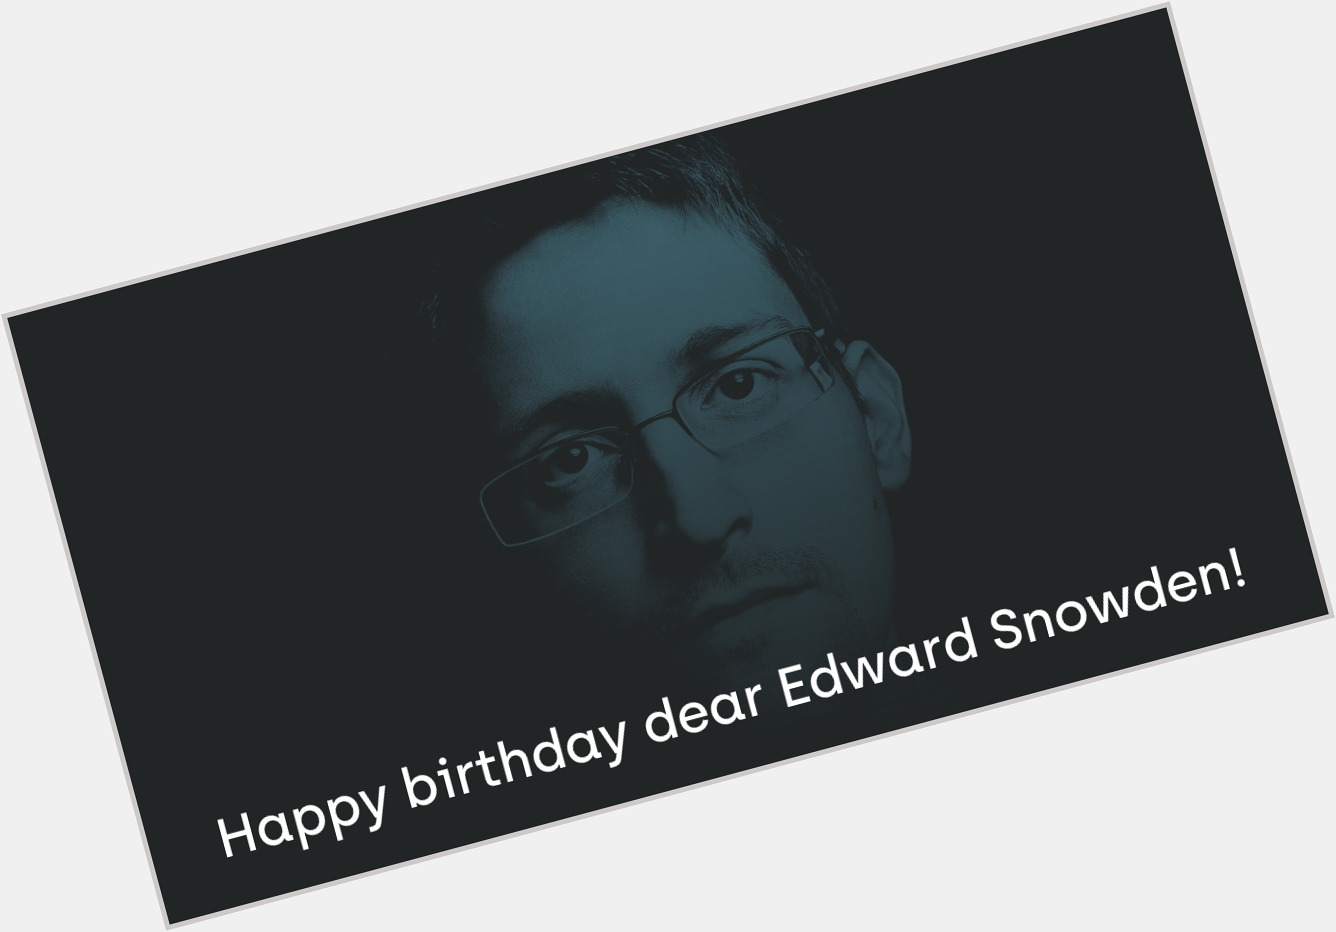 Happy birthday dear Edward  